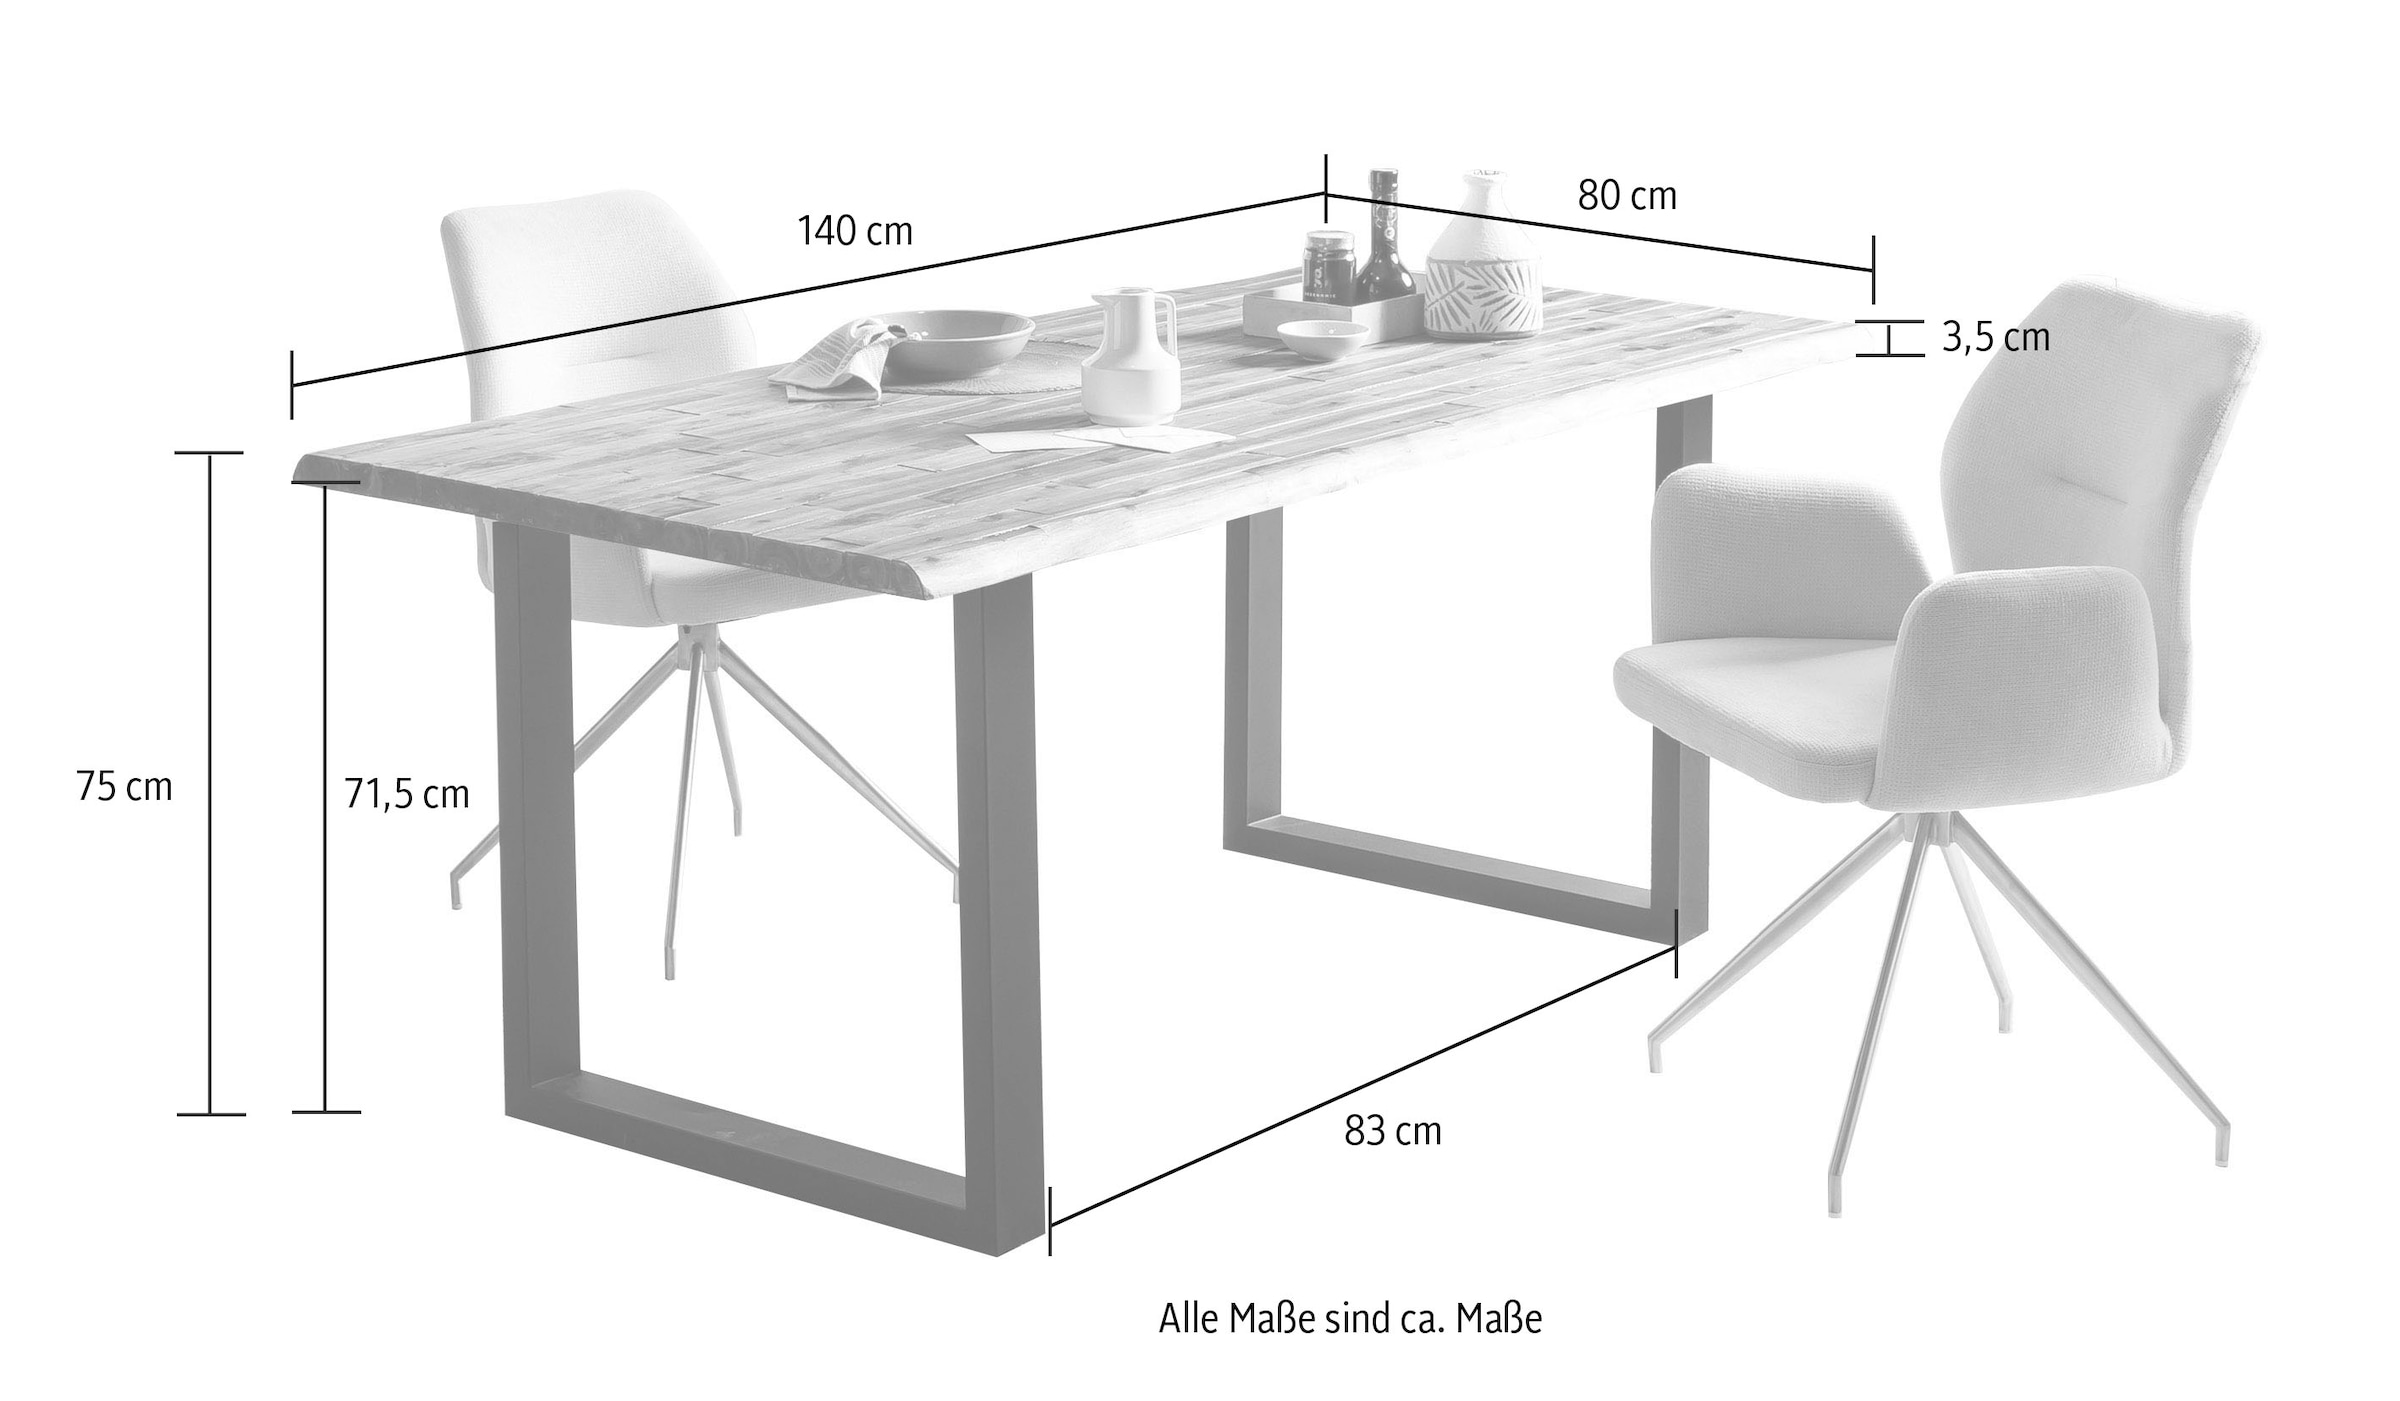 SalesFever Esstisch, Tischplatte 2-fach lackiert